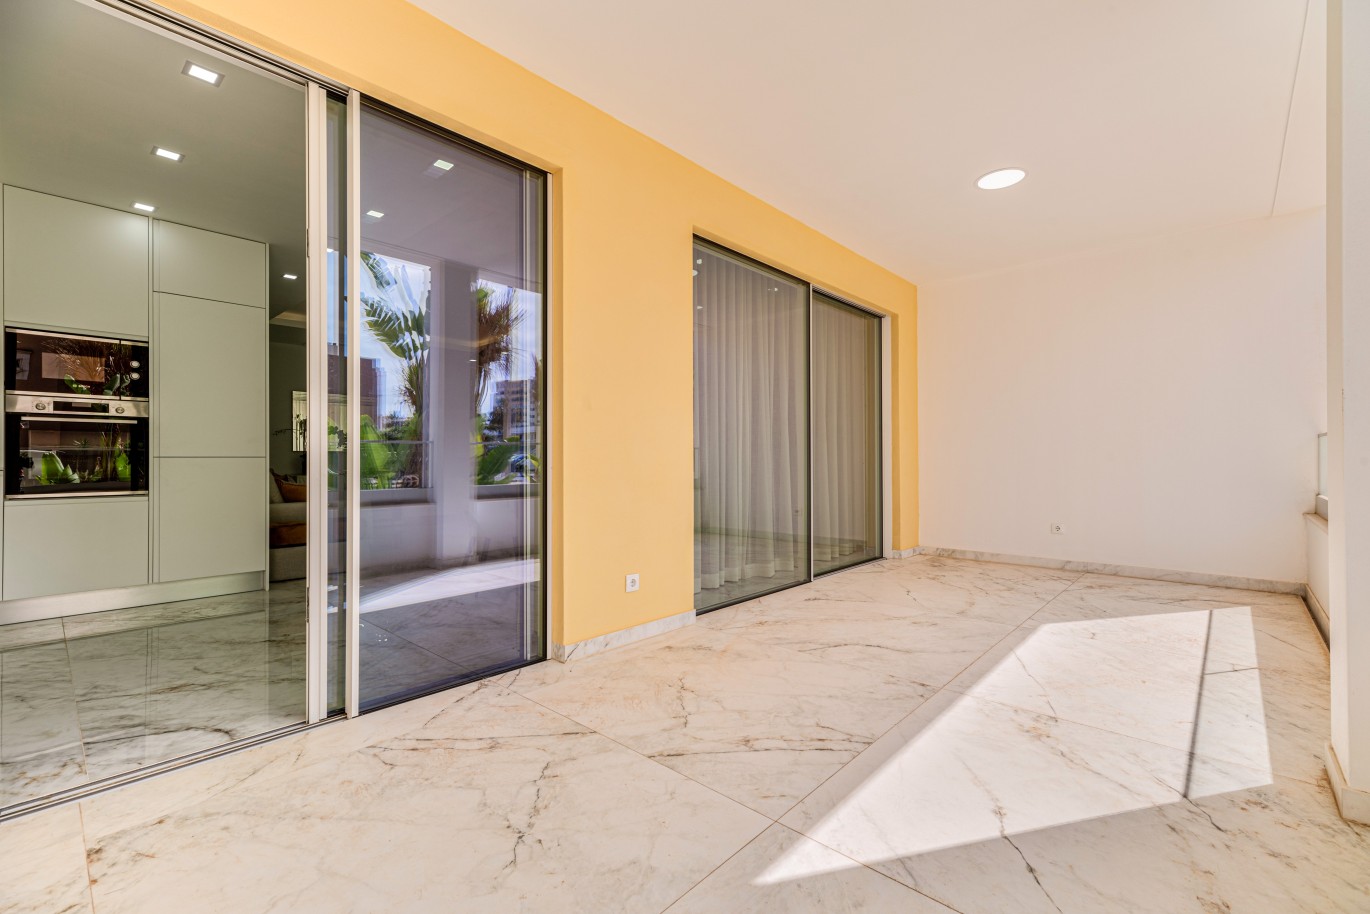 Verkauf einer Wohnung im Bau, mit Terrasse, Lagos, Algarve, Portugal_238450